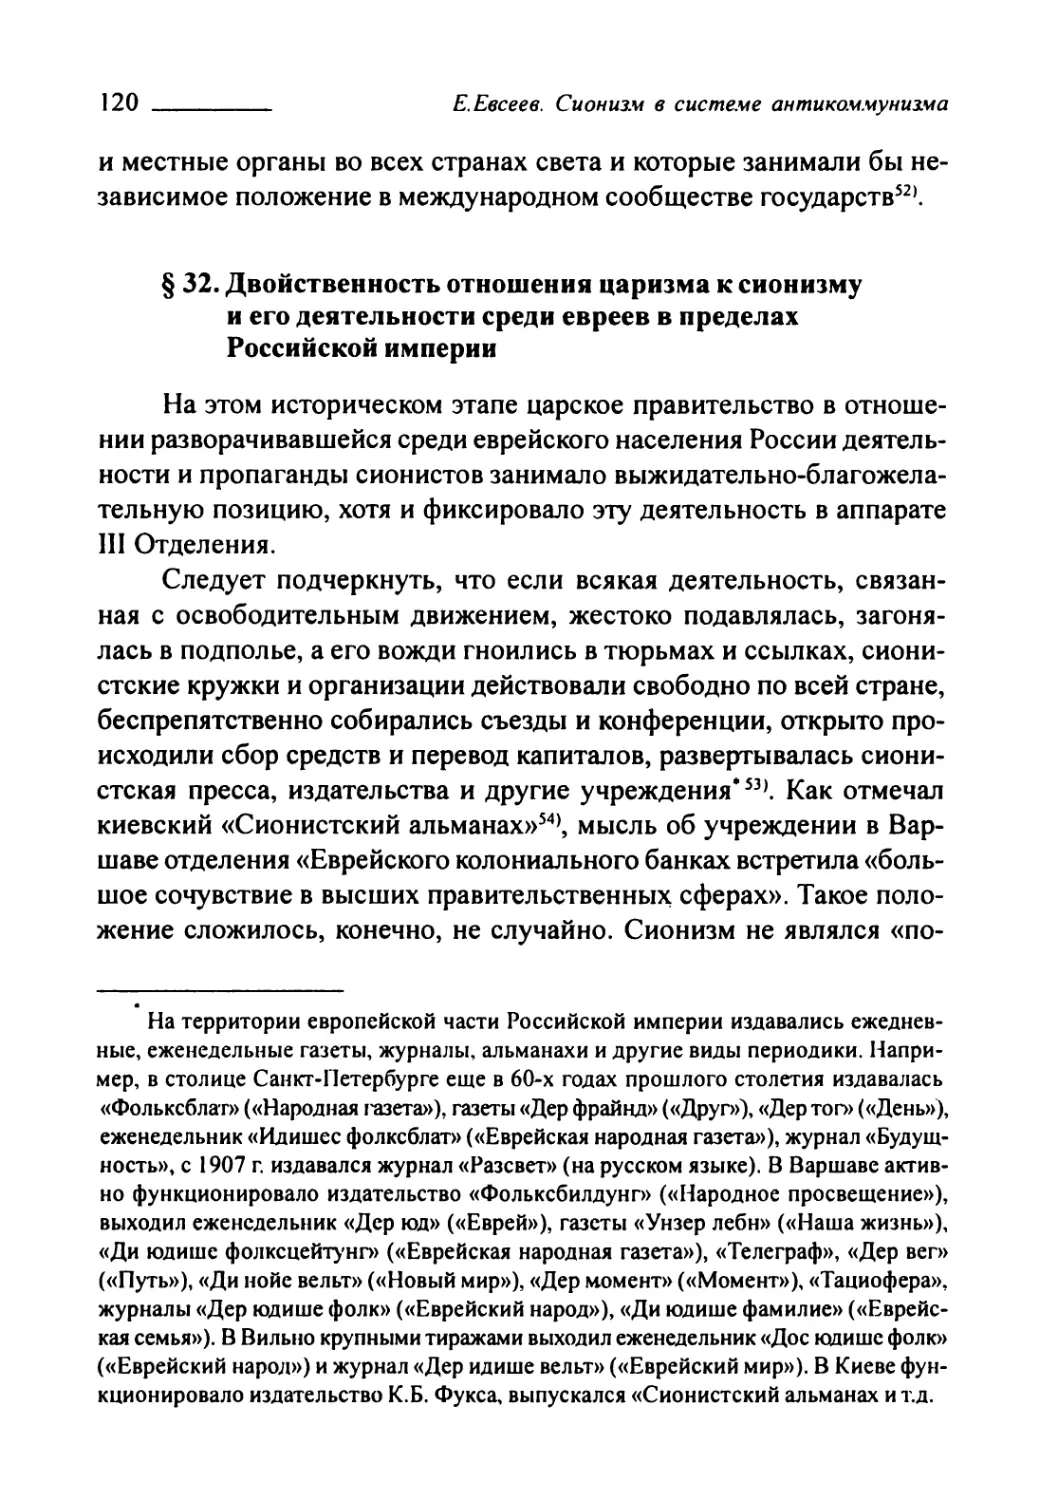 § 32. Двойственность отношения царизма к сионизму и его деятельности среди евреев в пределах Российской империи